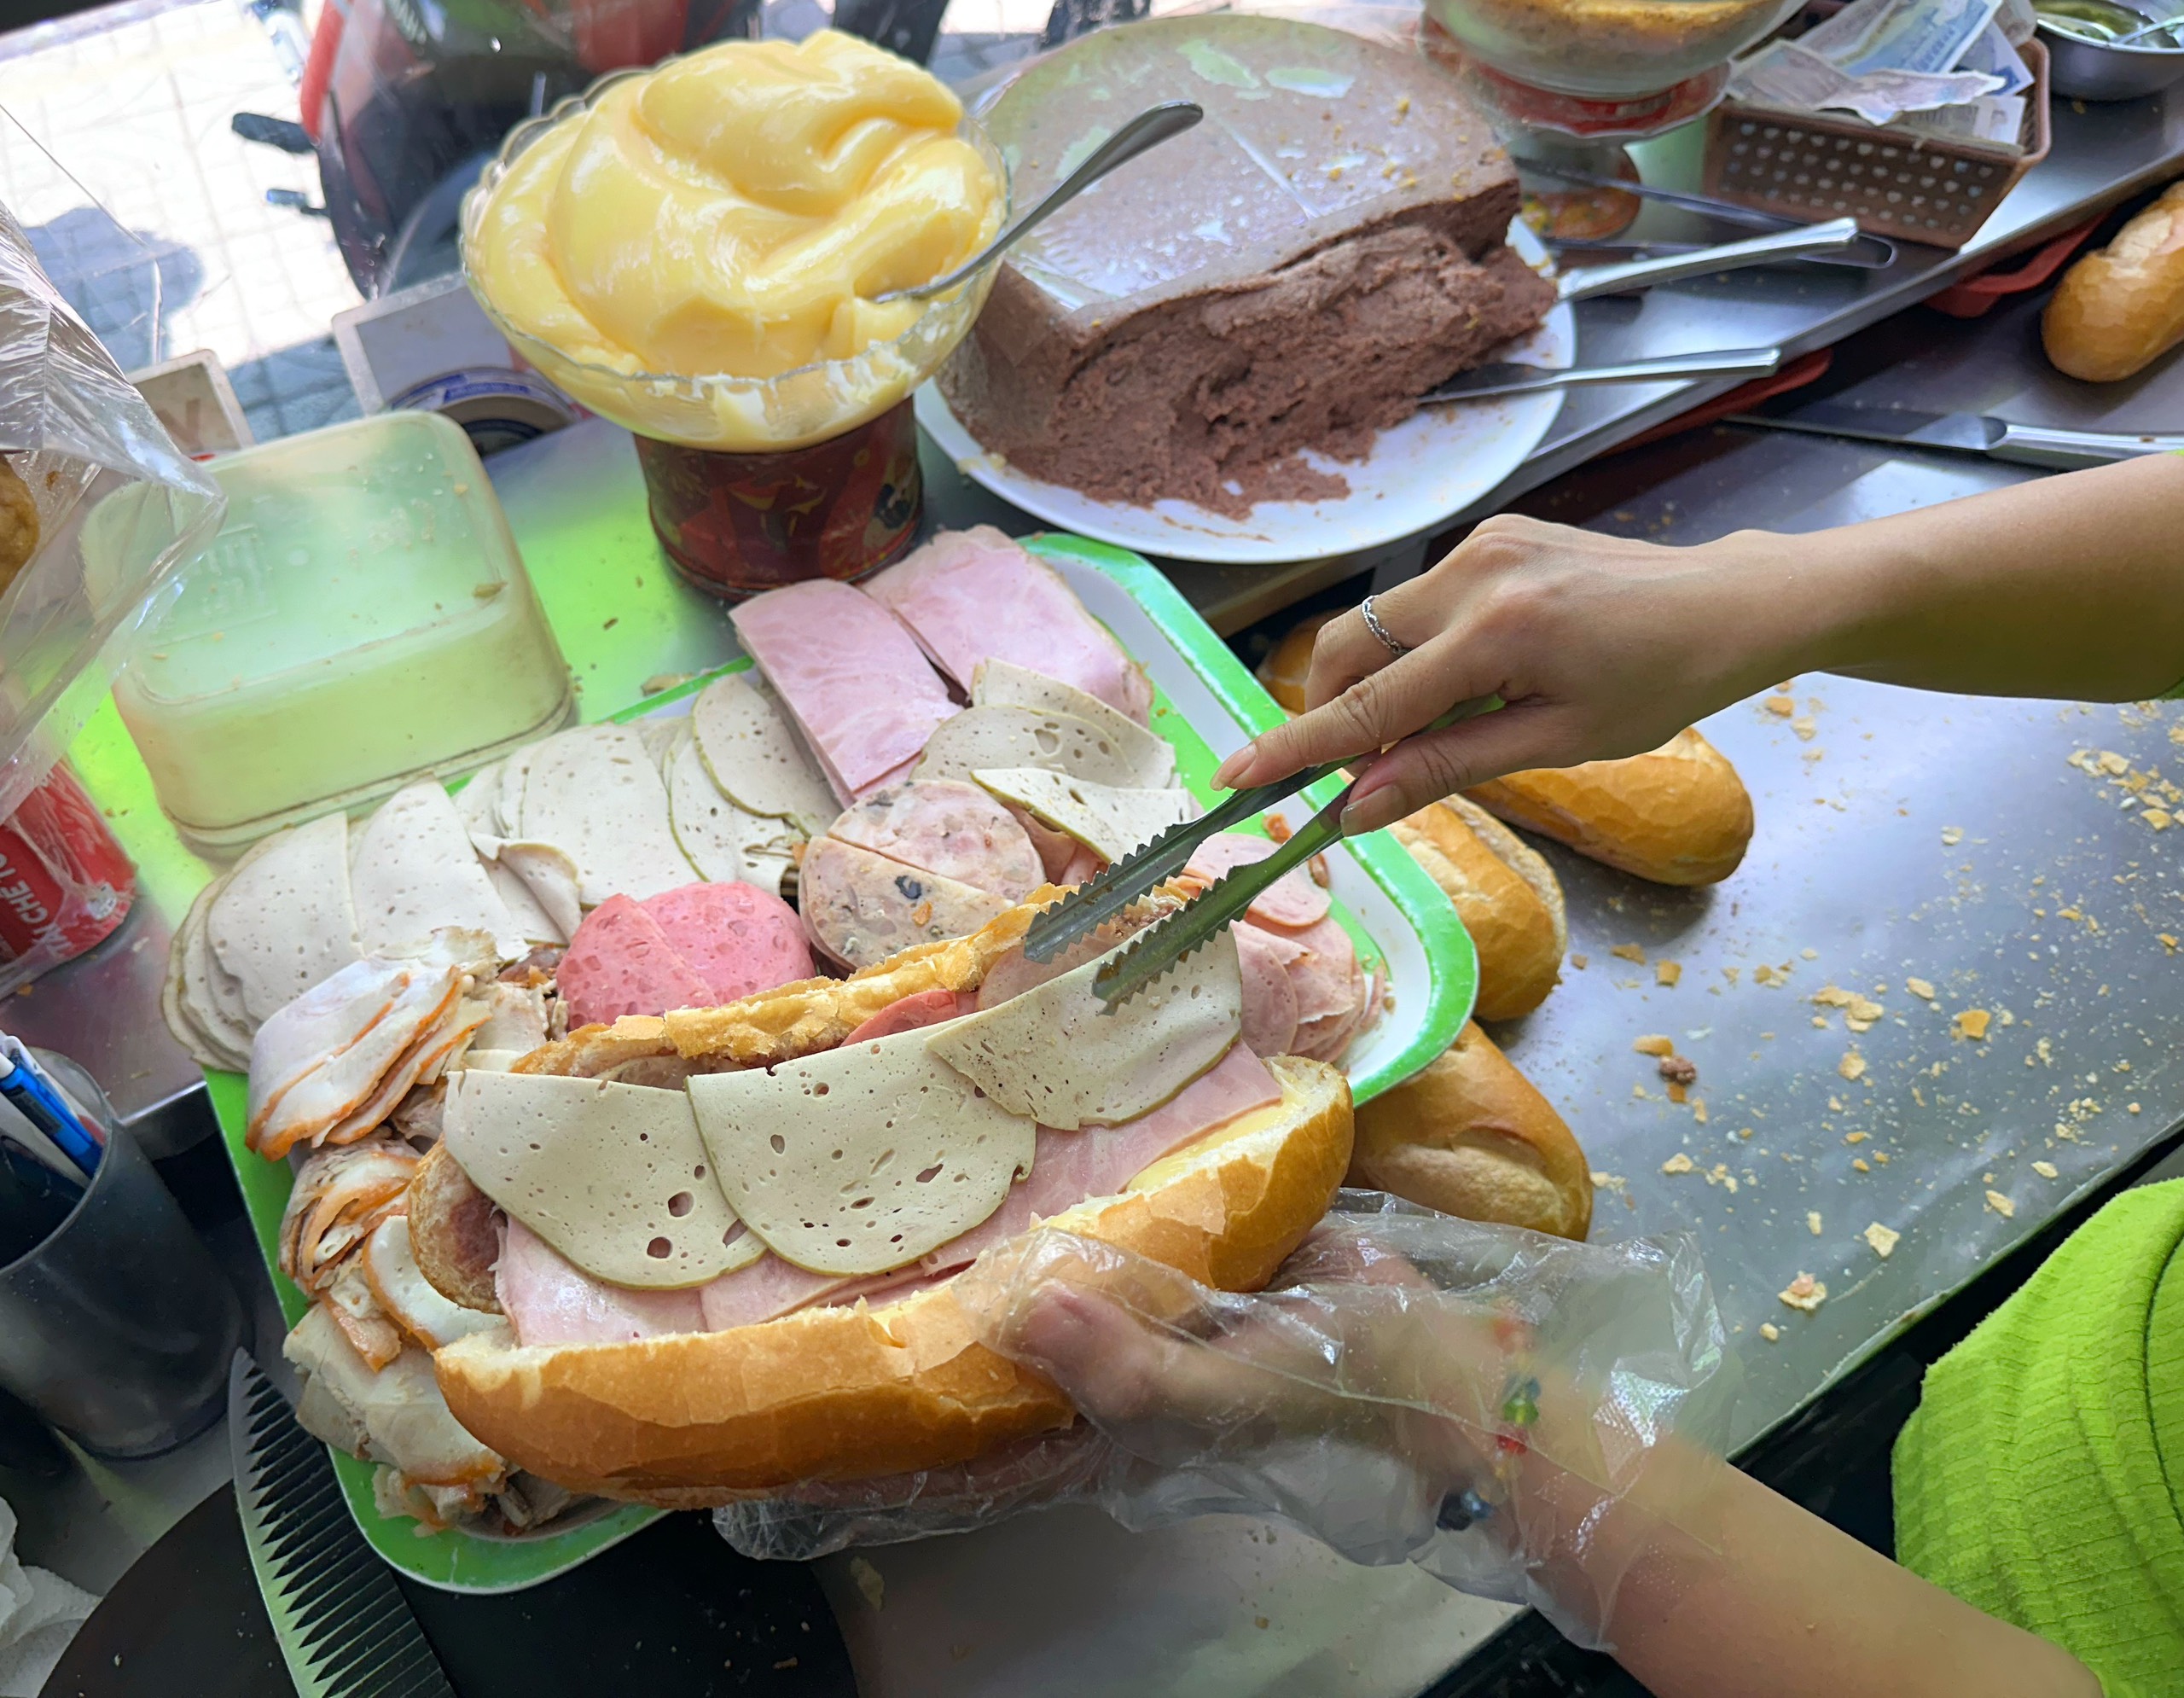 Hôm nay Michelin Guide công bố danh sách quán ăn ở Việt Nam: Bánh mì liệu có đánh rớt như 2023?- Ảnh 7.